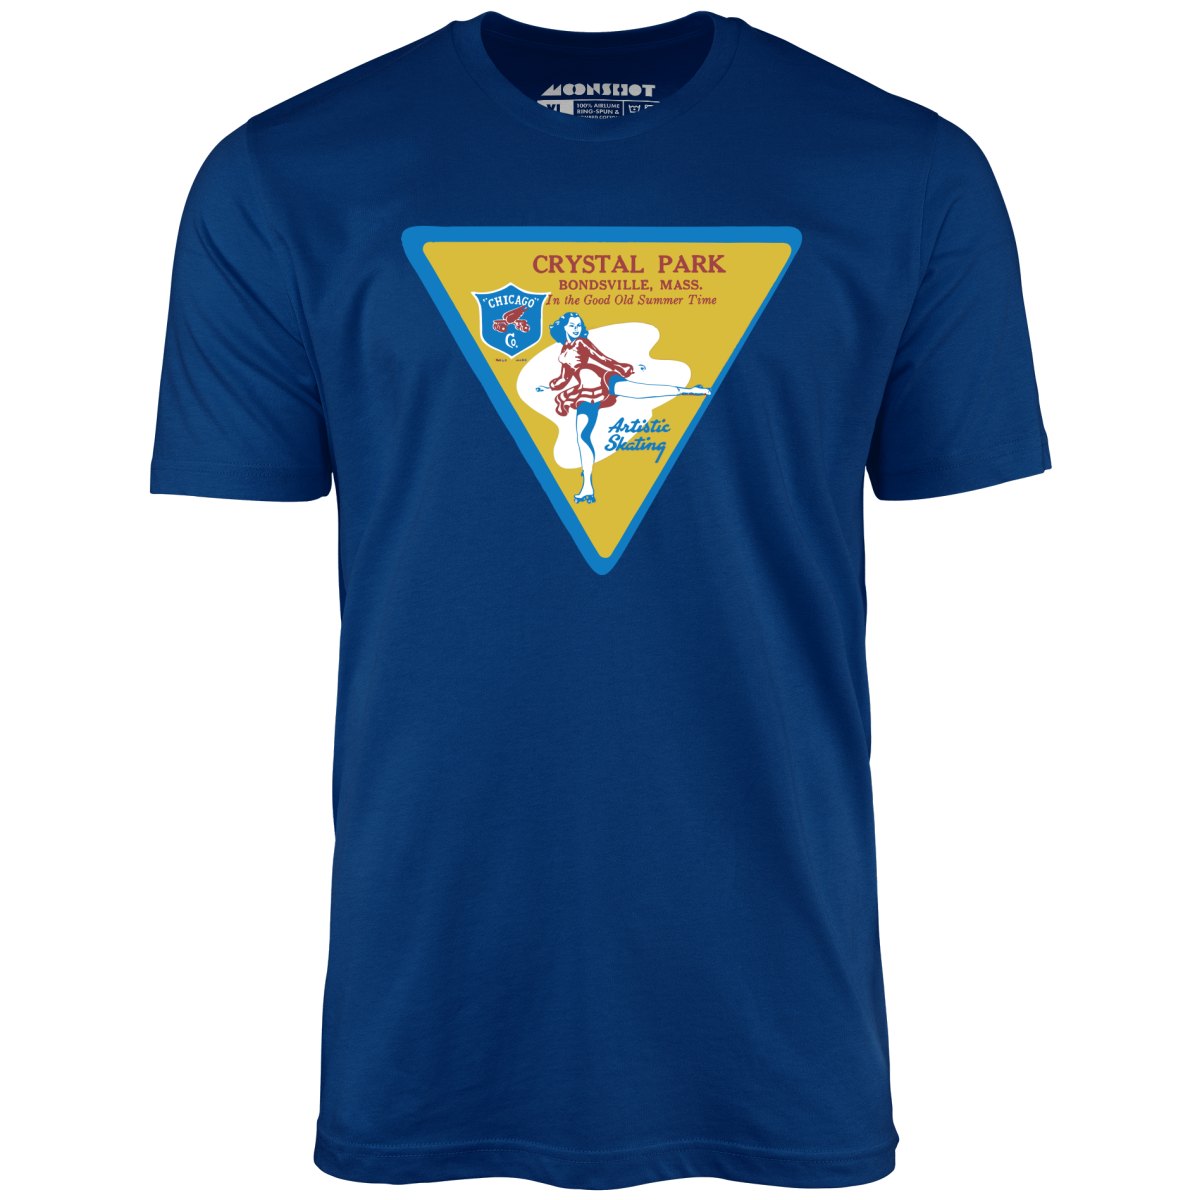 Crystal Park - Bondsville, MA - Vintage Roller Rink - Unisex T-Shirt